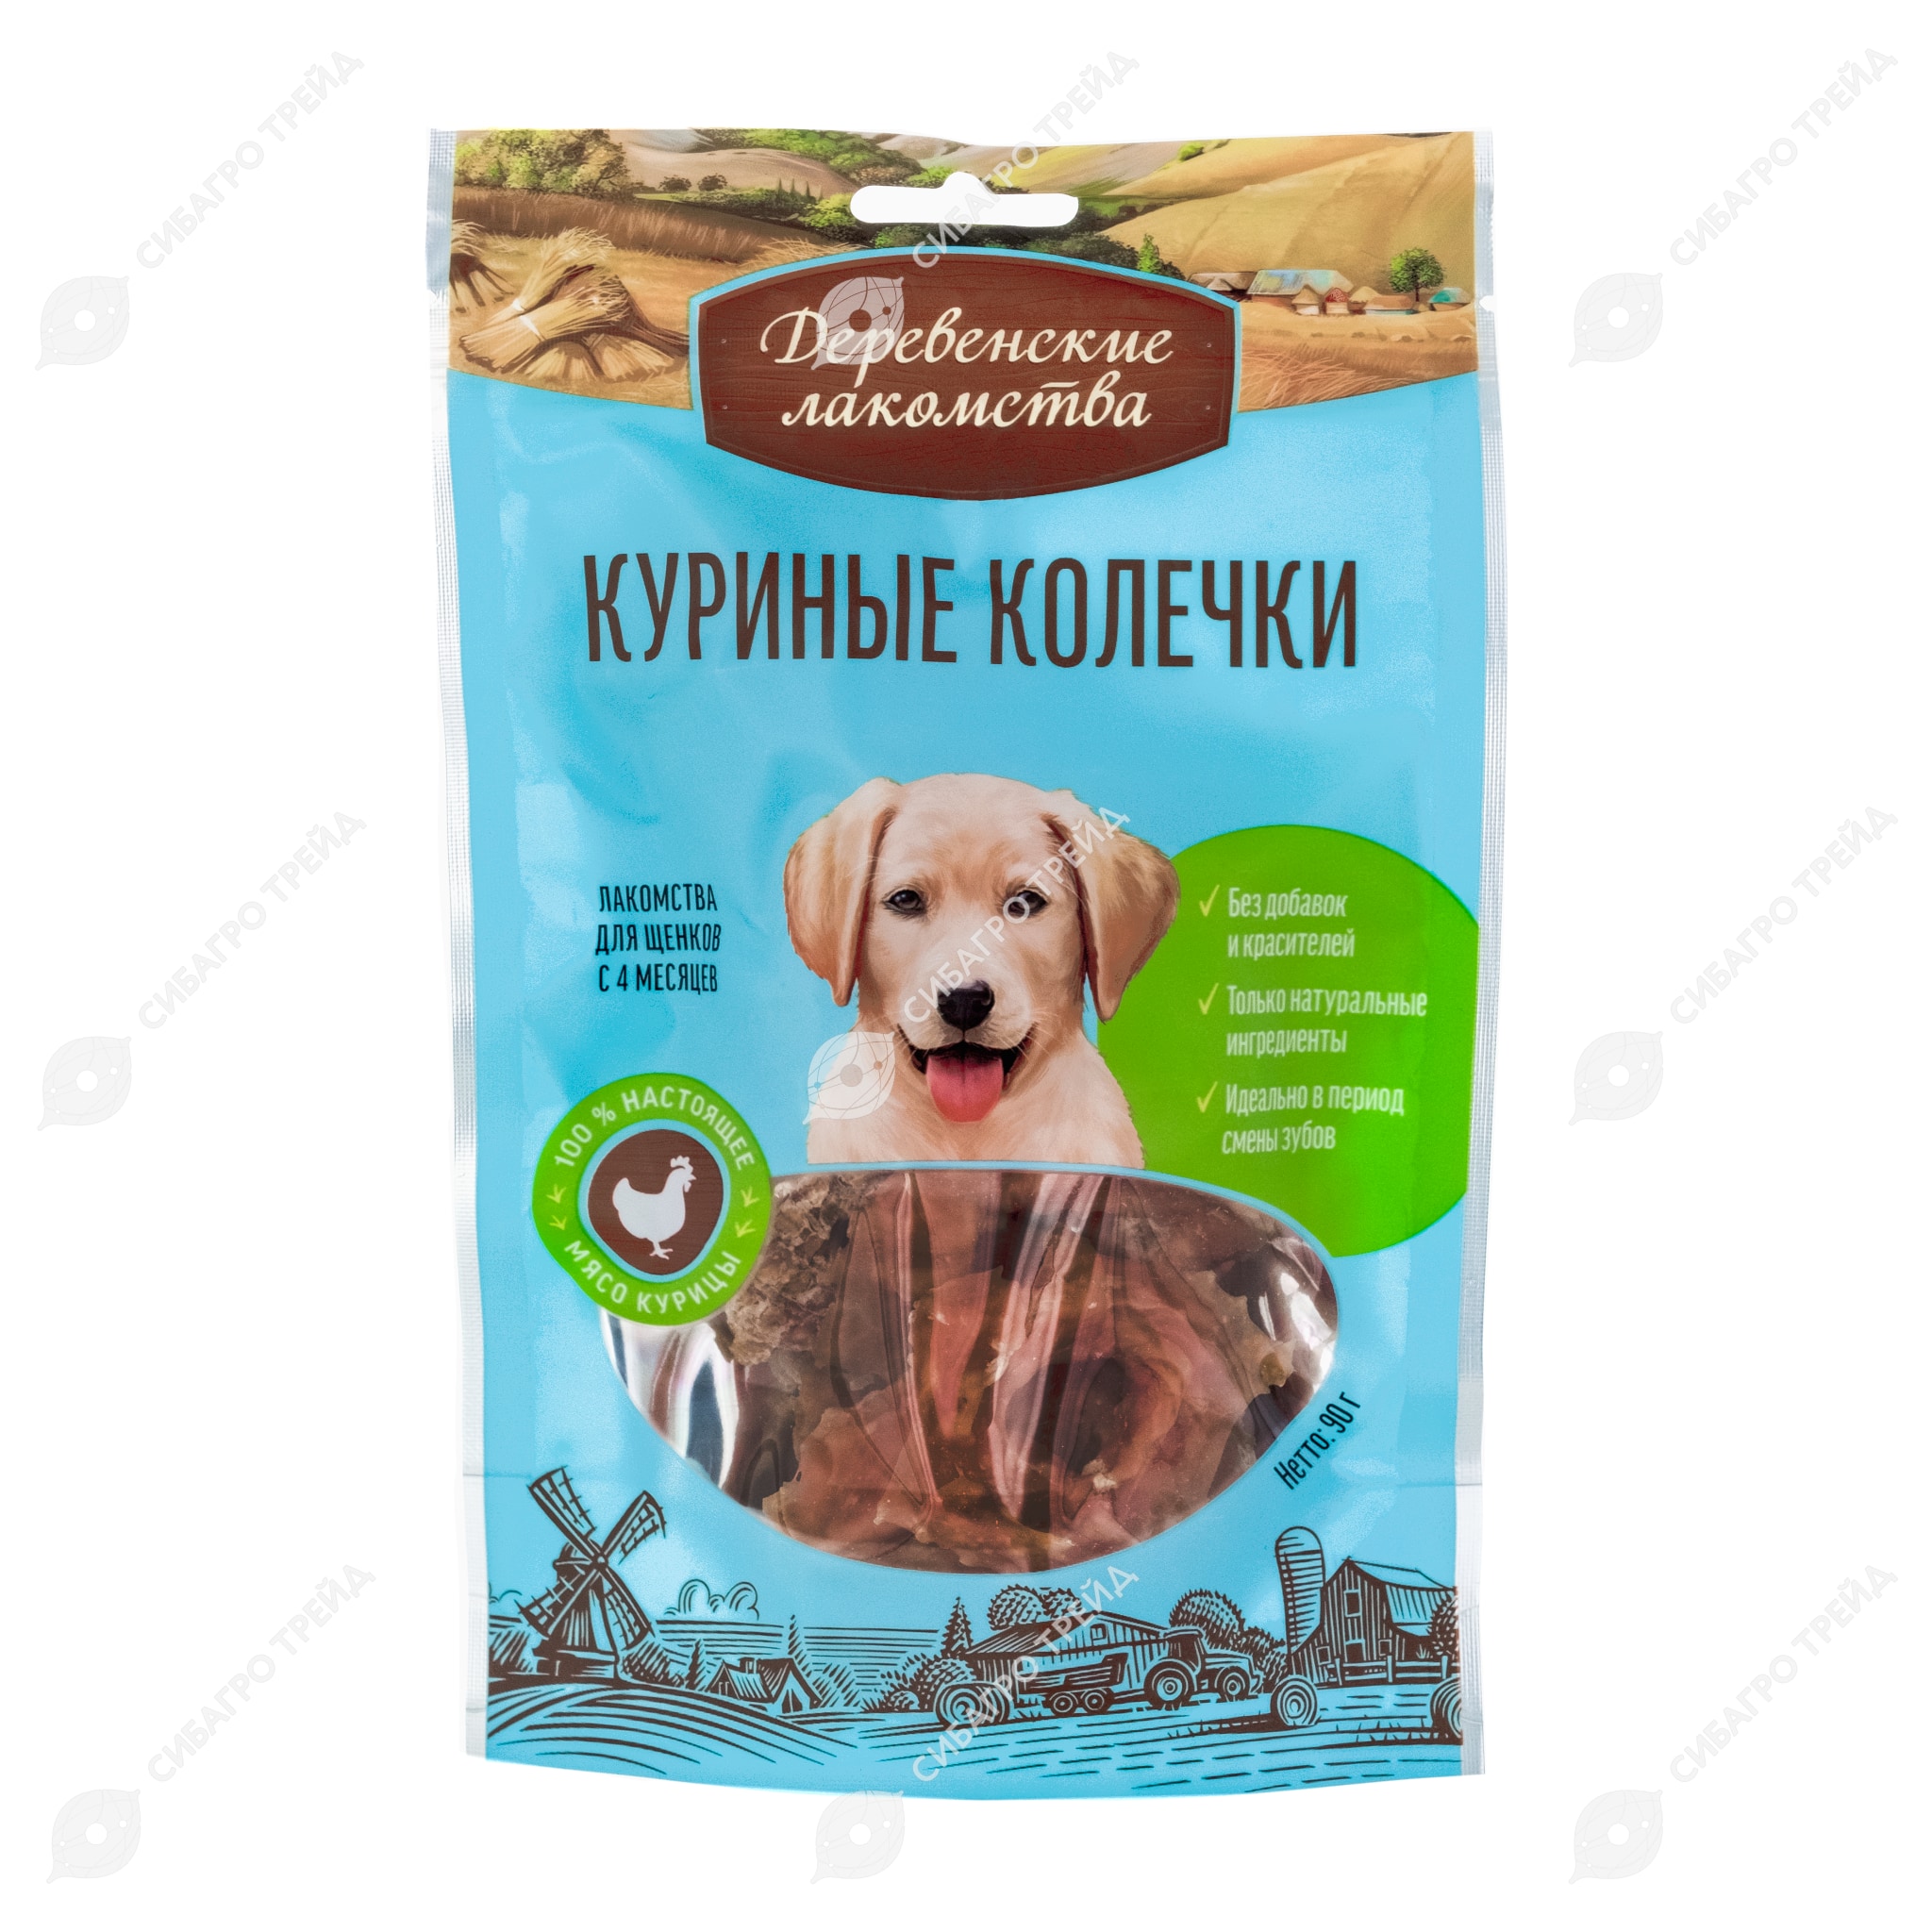 Лакомства для собак и щенков купить в Киеве, Украине недорого, цены в зоомагазине ЗооФаворит